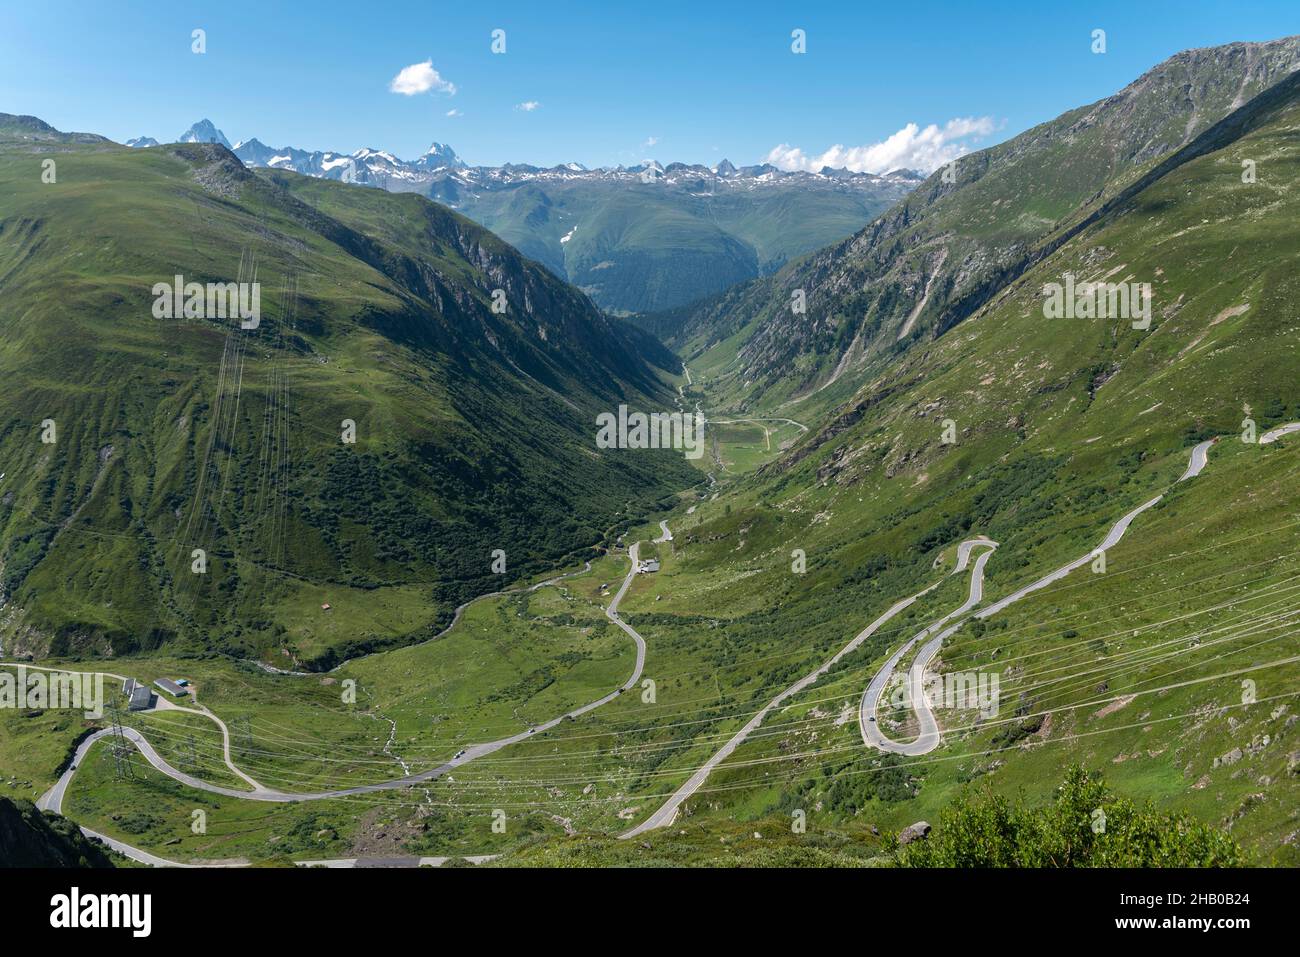 Alpine landscape with Nufenen Pass road, Ulrichen, Valais, Switzerland, Europe Stock Photo